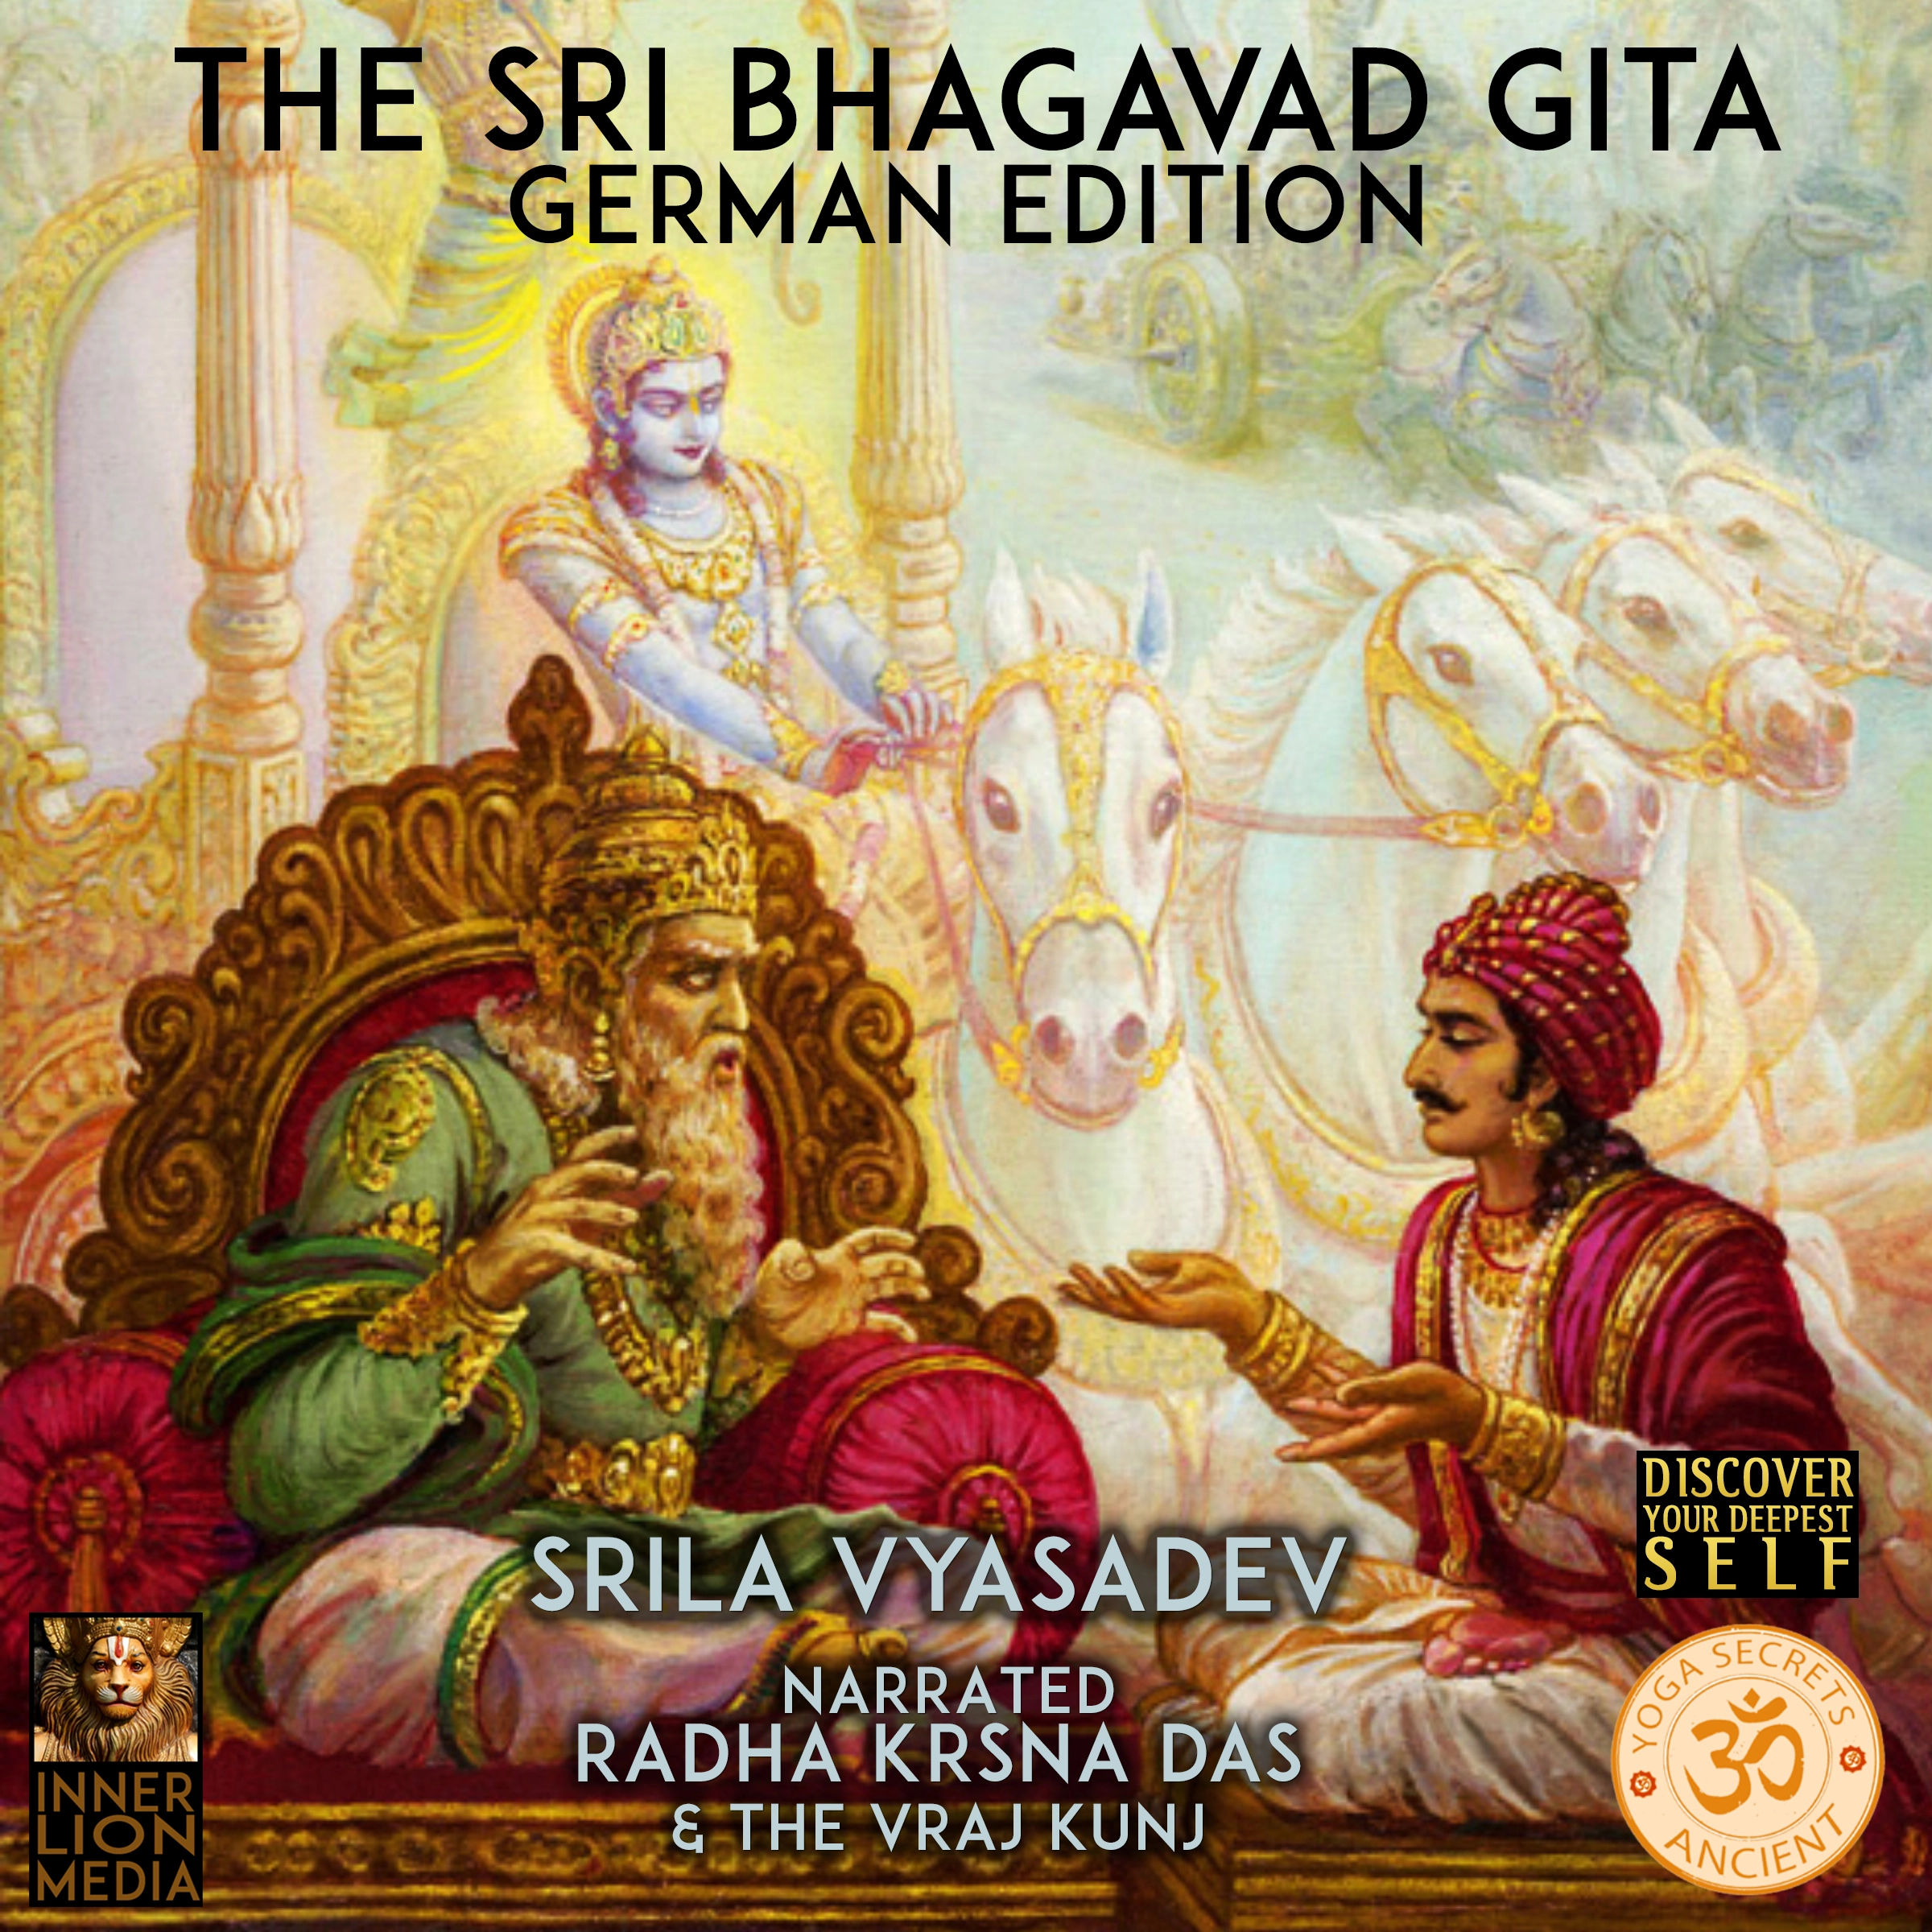 The Sri Bhagavad Gita Audiobook by Srila Vyasadev